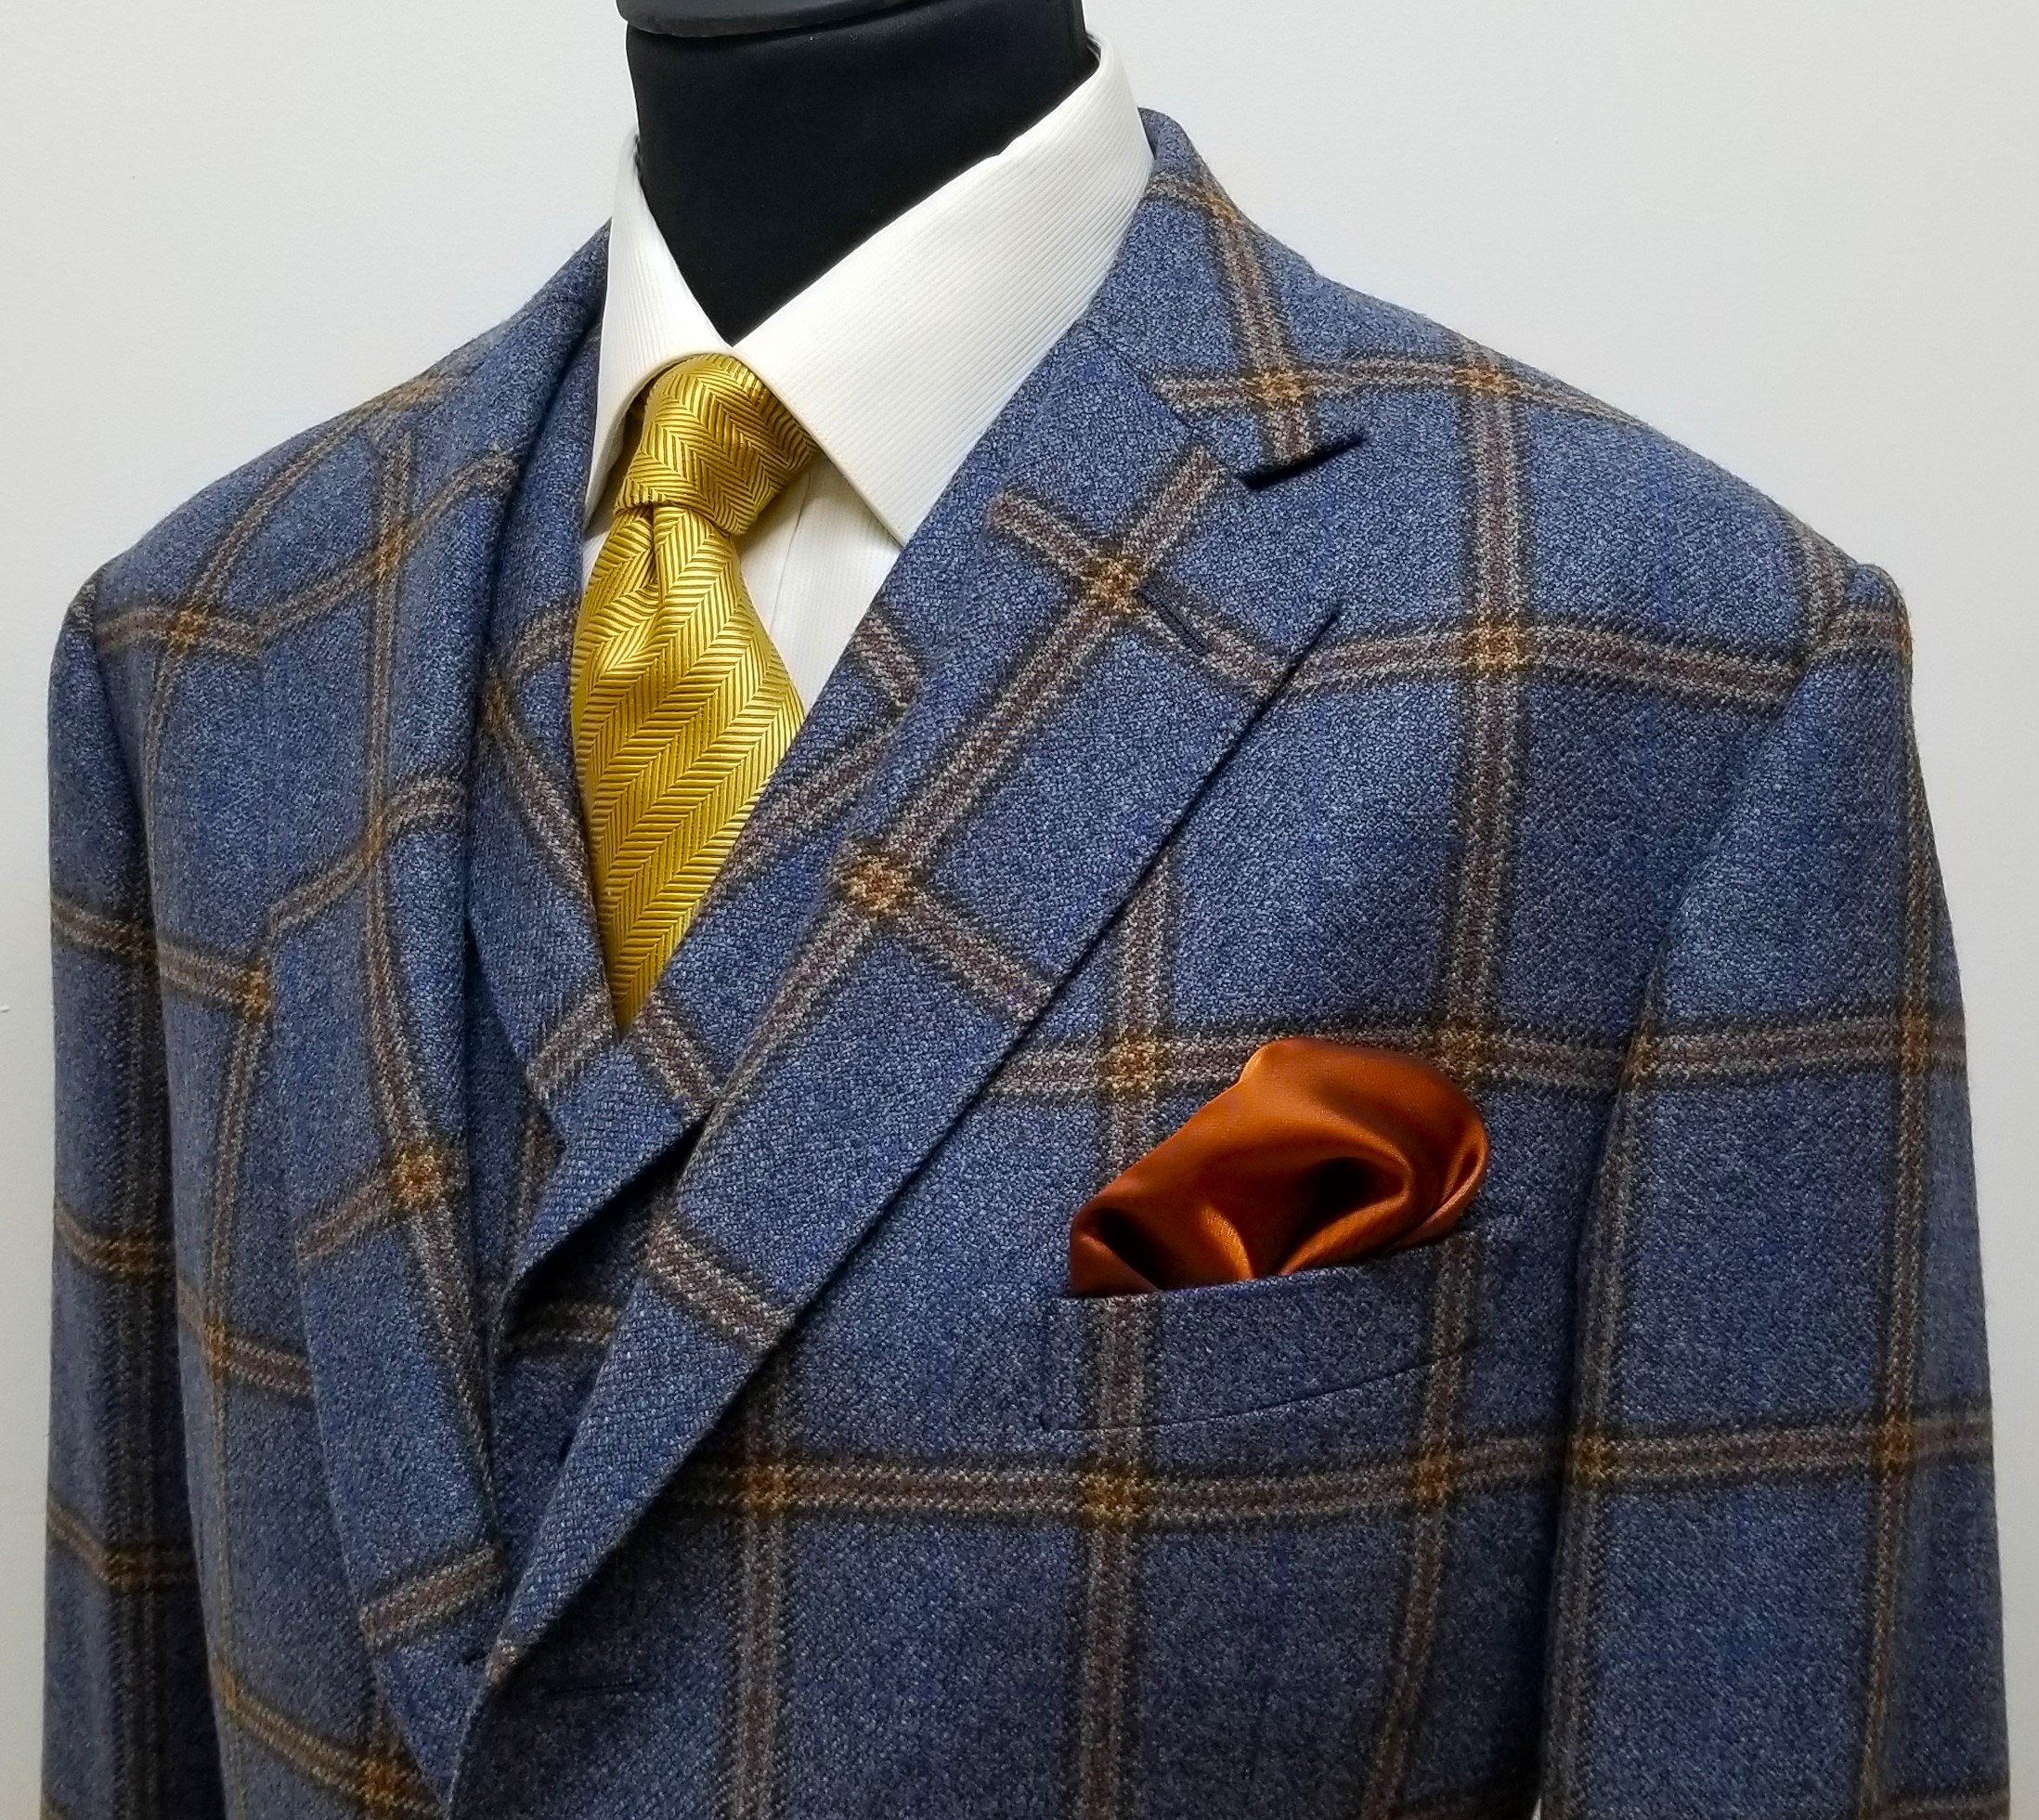 3 Piece suit in blue check tweed (6).jpg